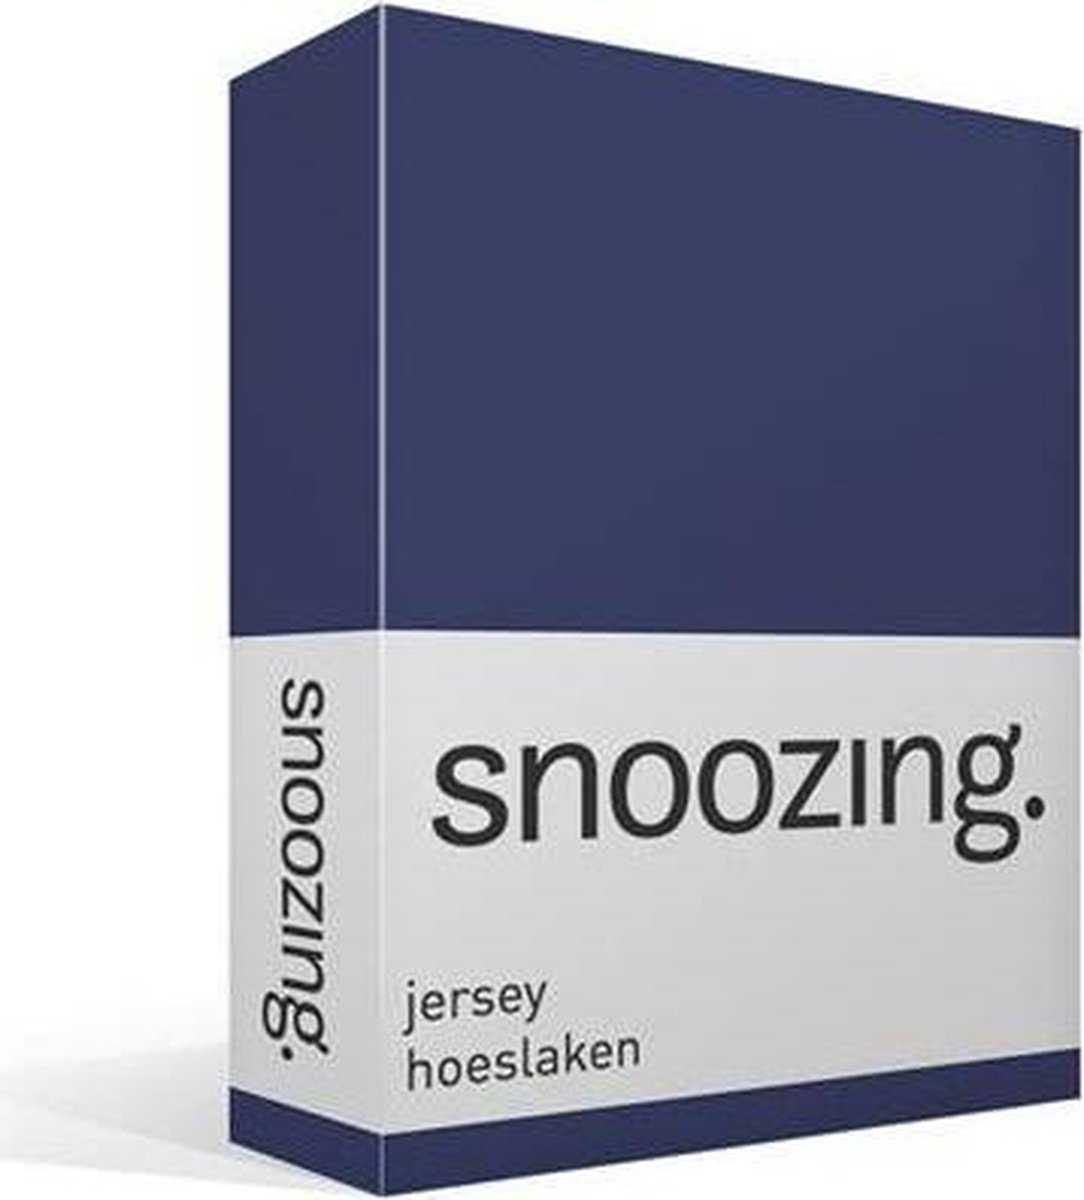 Snoozing Jersey Hoeslaken - 100% Gebreide Jersey Katoen - 1-persoons (80/90x200 Cm) - Navy - Blauw